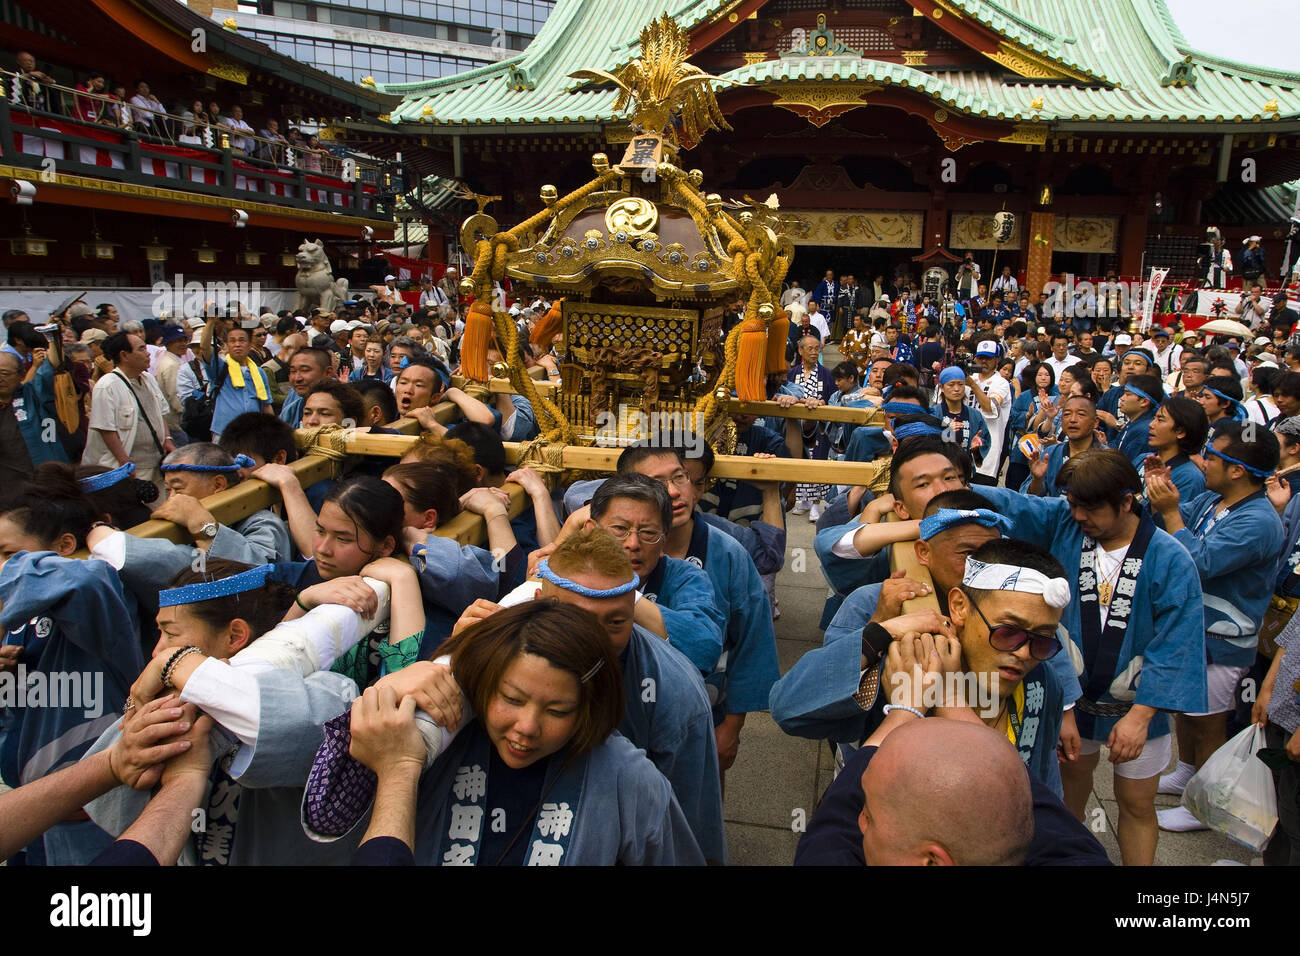 Japon, Tokyo, Kanda Miyojin culte, Kanda festival, personne, lieu de culte, porter, Banque D'Images